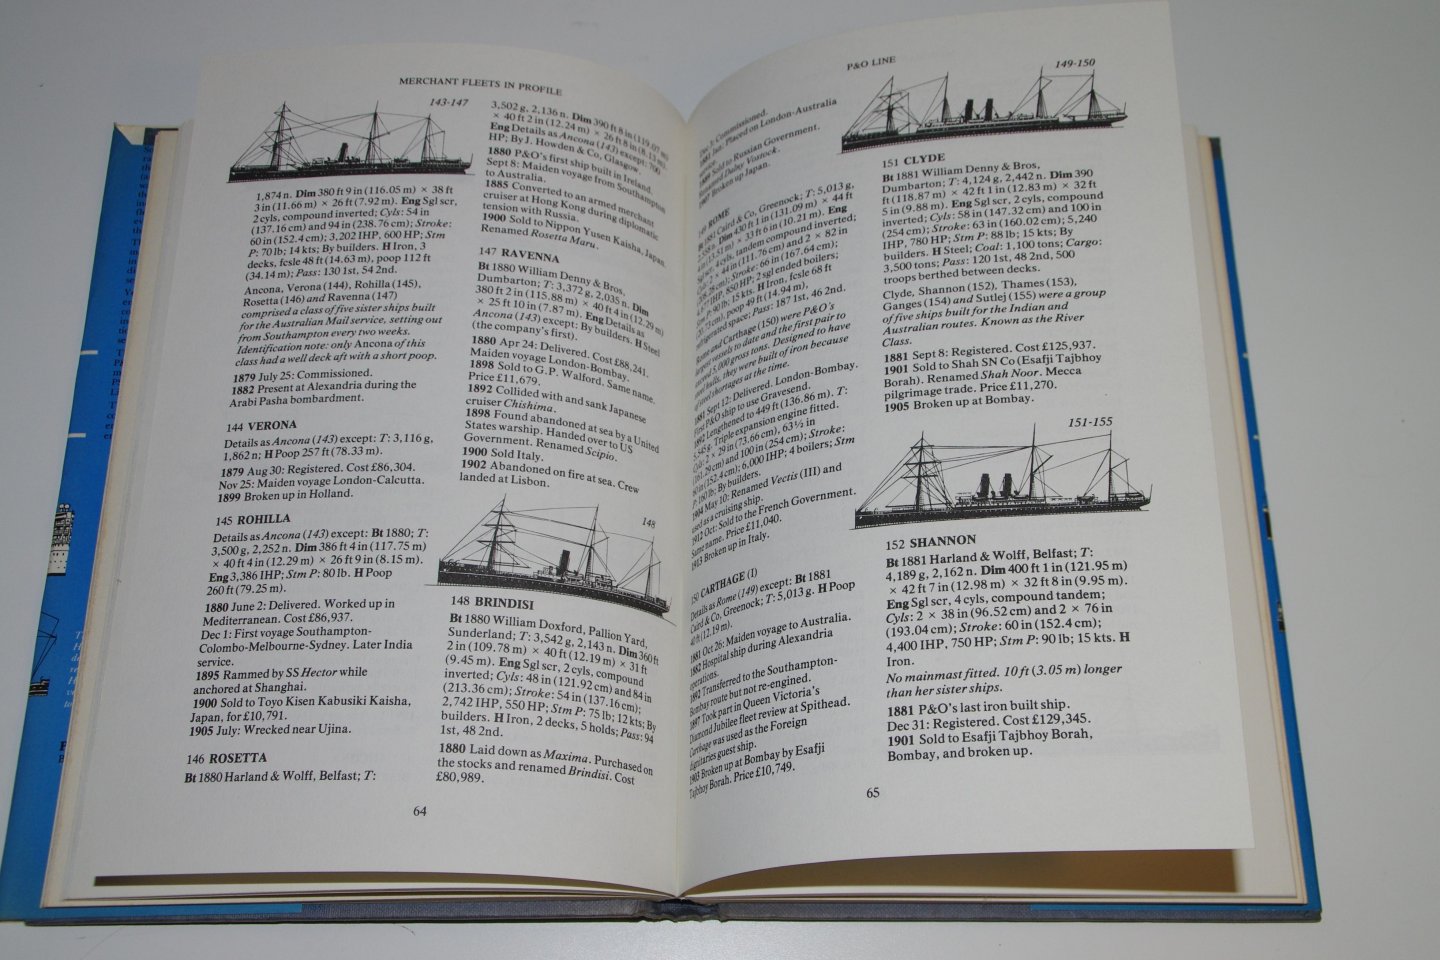 Duncan Haws - Merchant Fleets in profile